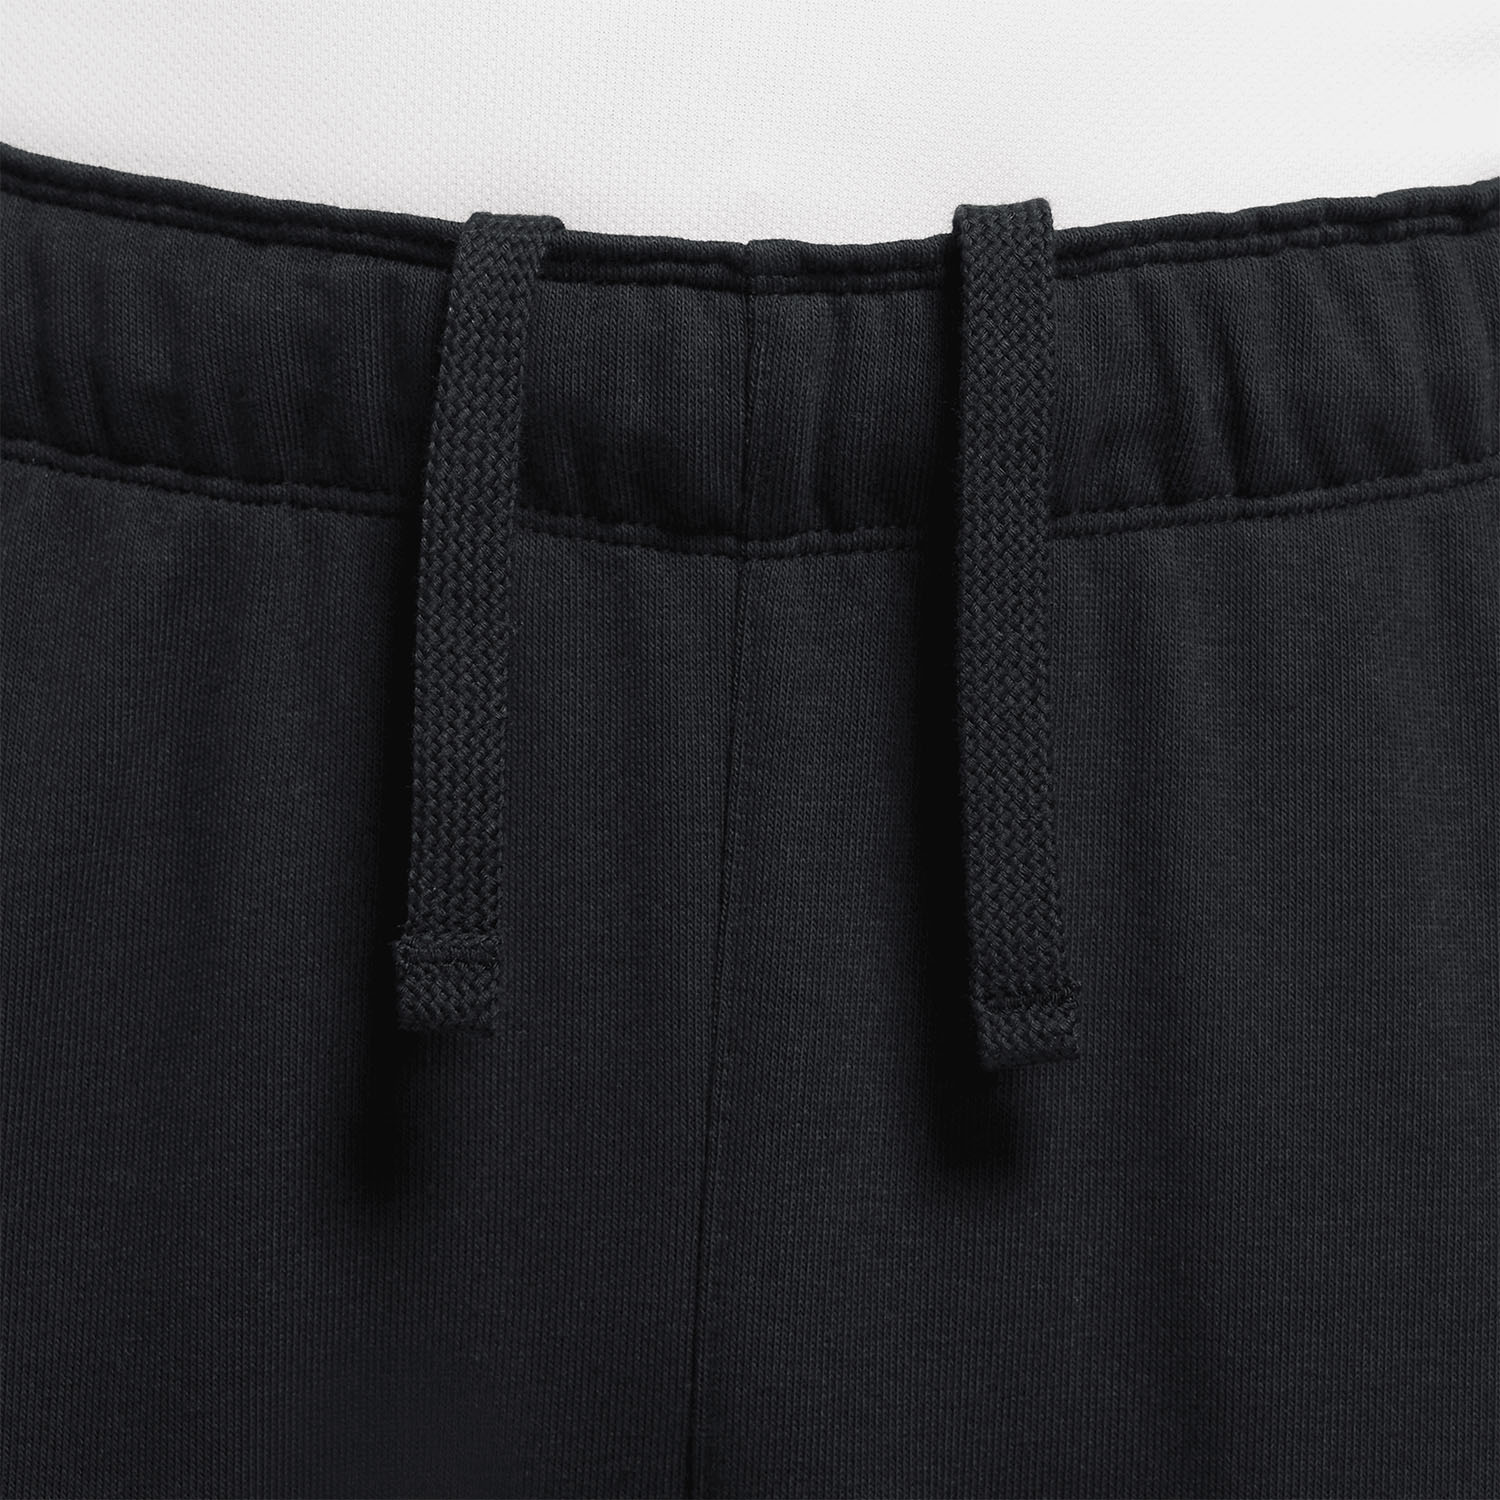 Nike Dri-FIT Heritage Pantaloni - Black